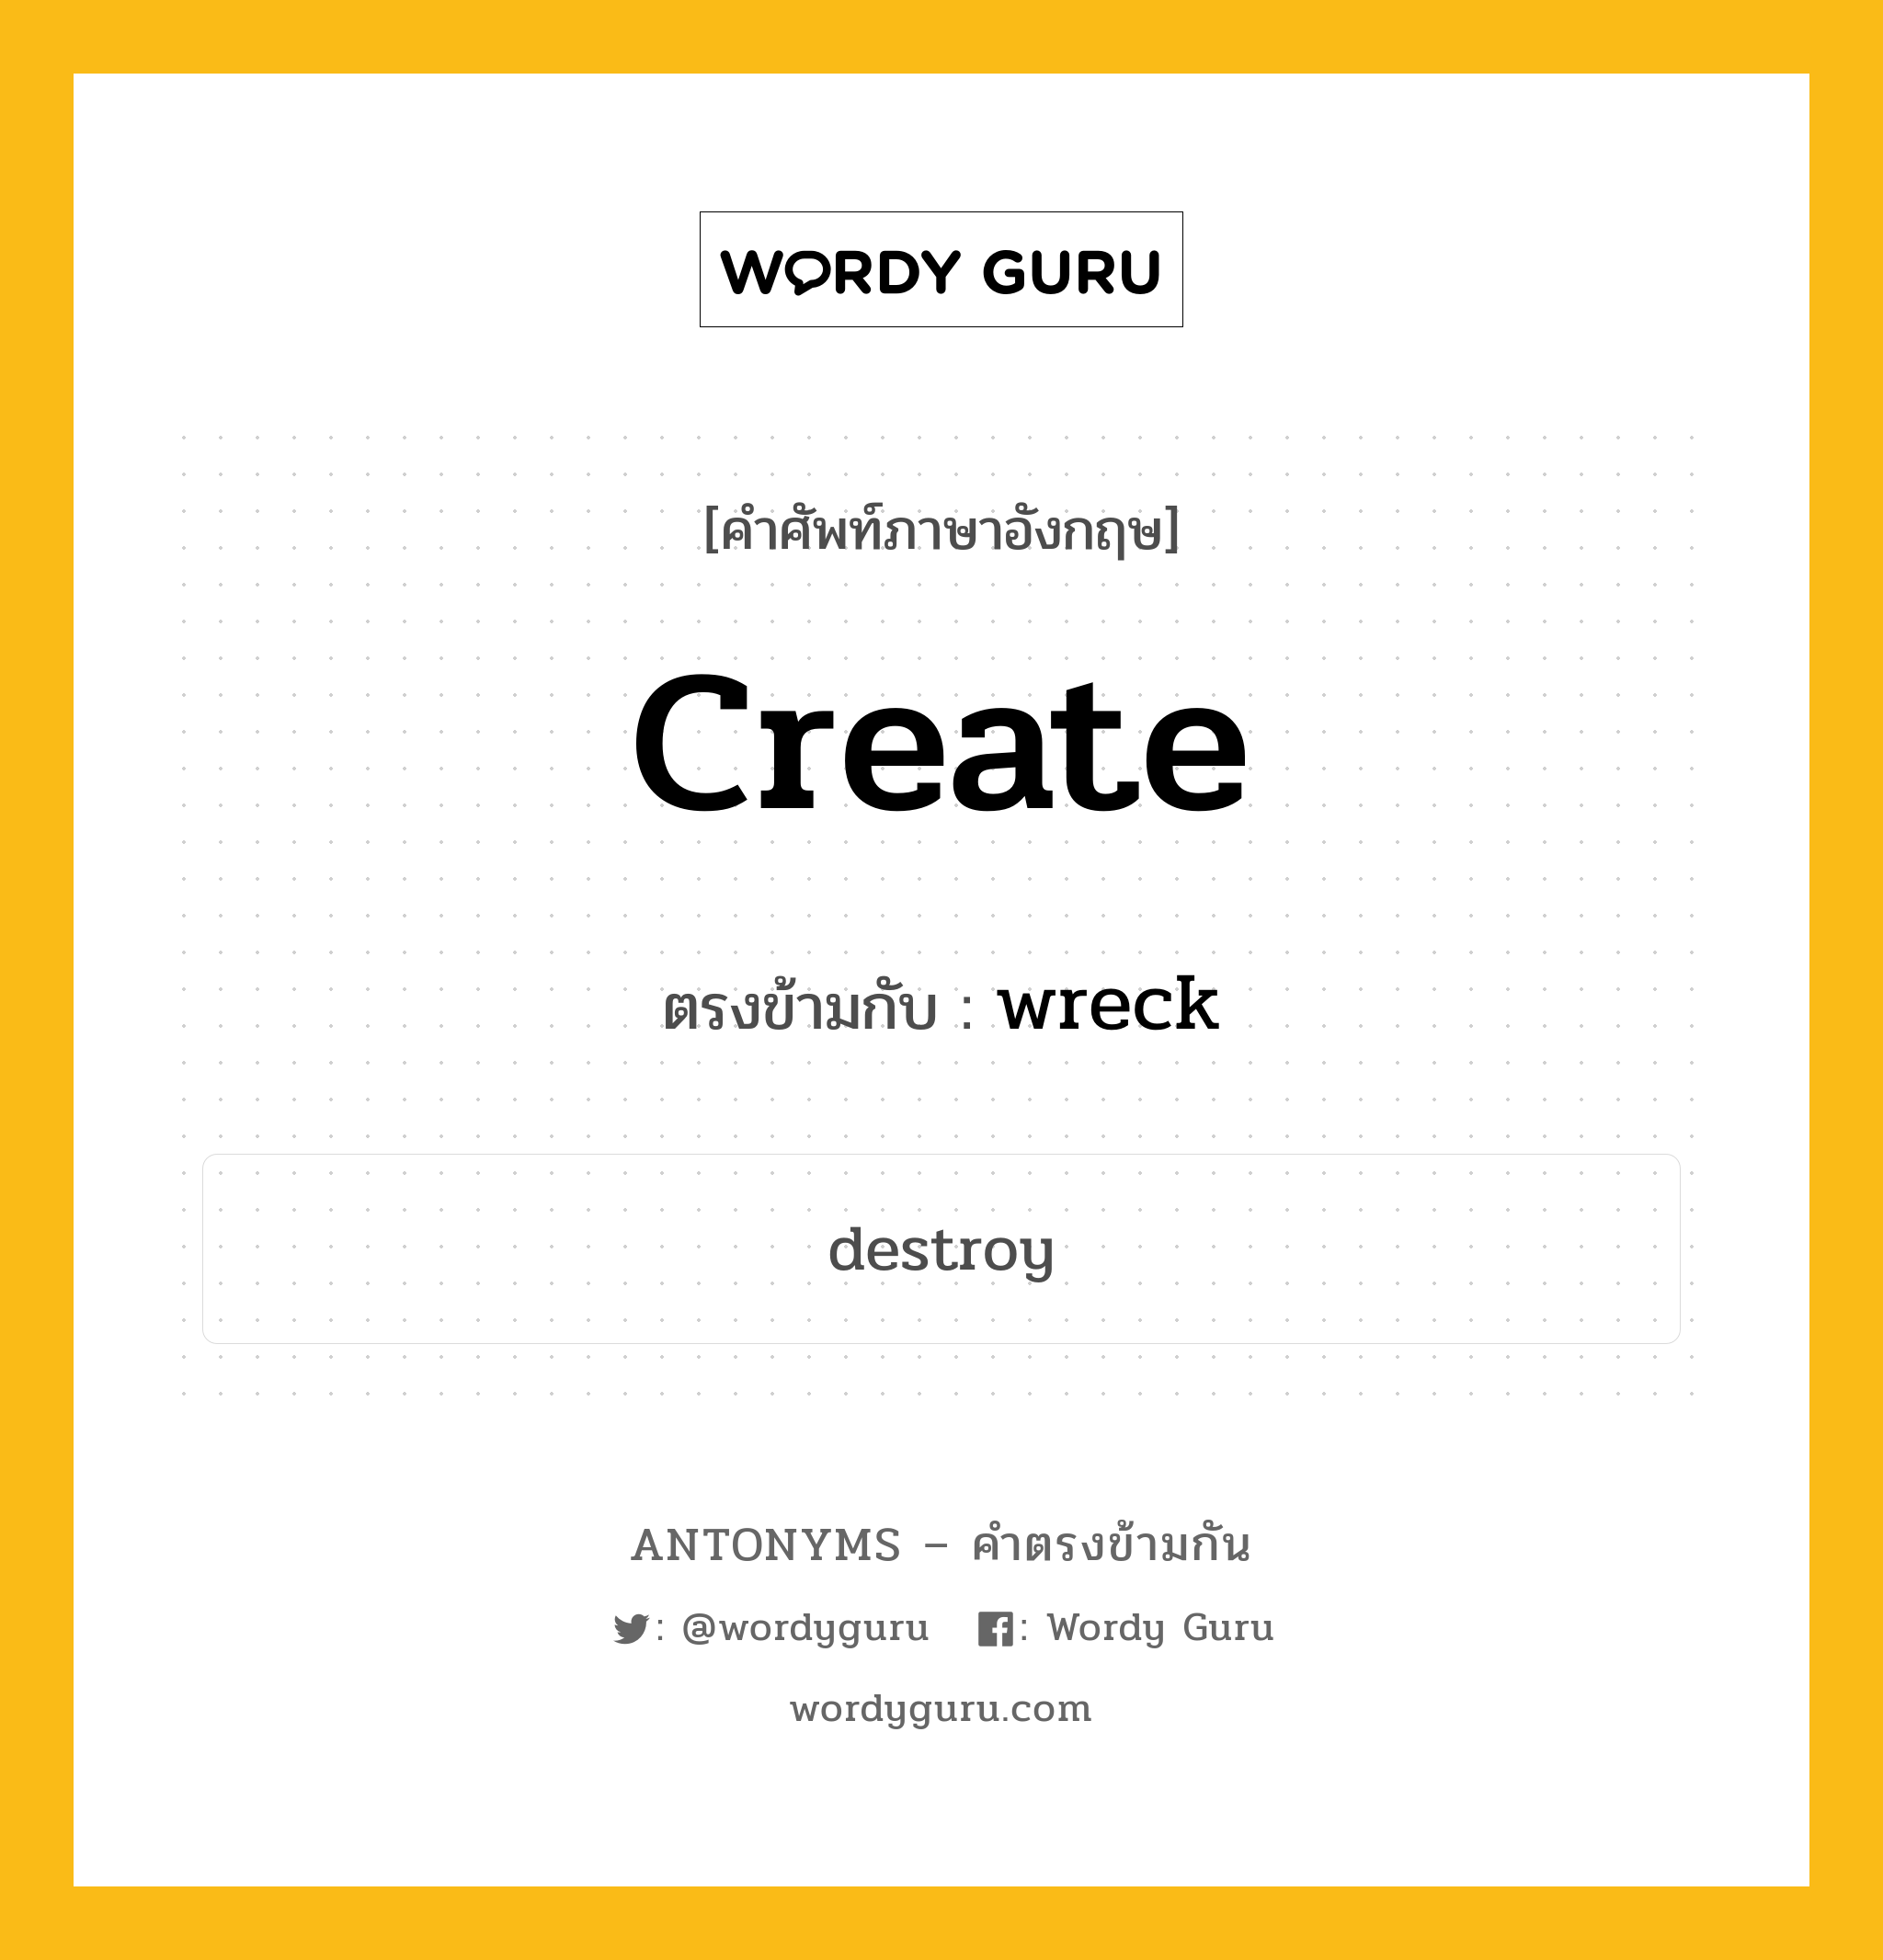 create เป็นคำตรงข้ามกับคำไหนบ้าง?, คำศัพท์ภาษาอังกฤษ create ตรงข้ามกับ wreck หมวด wreck